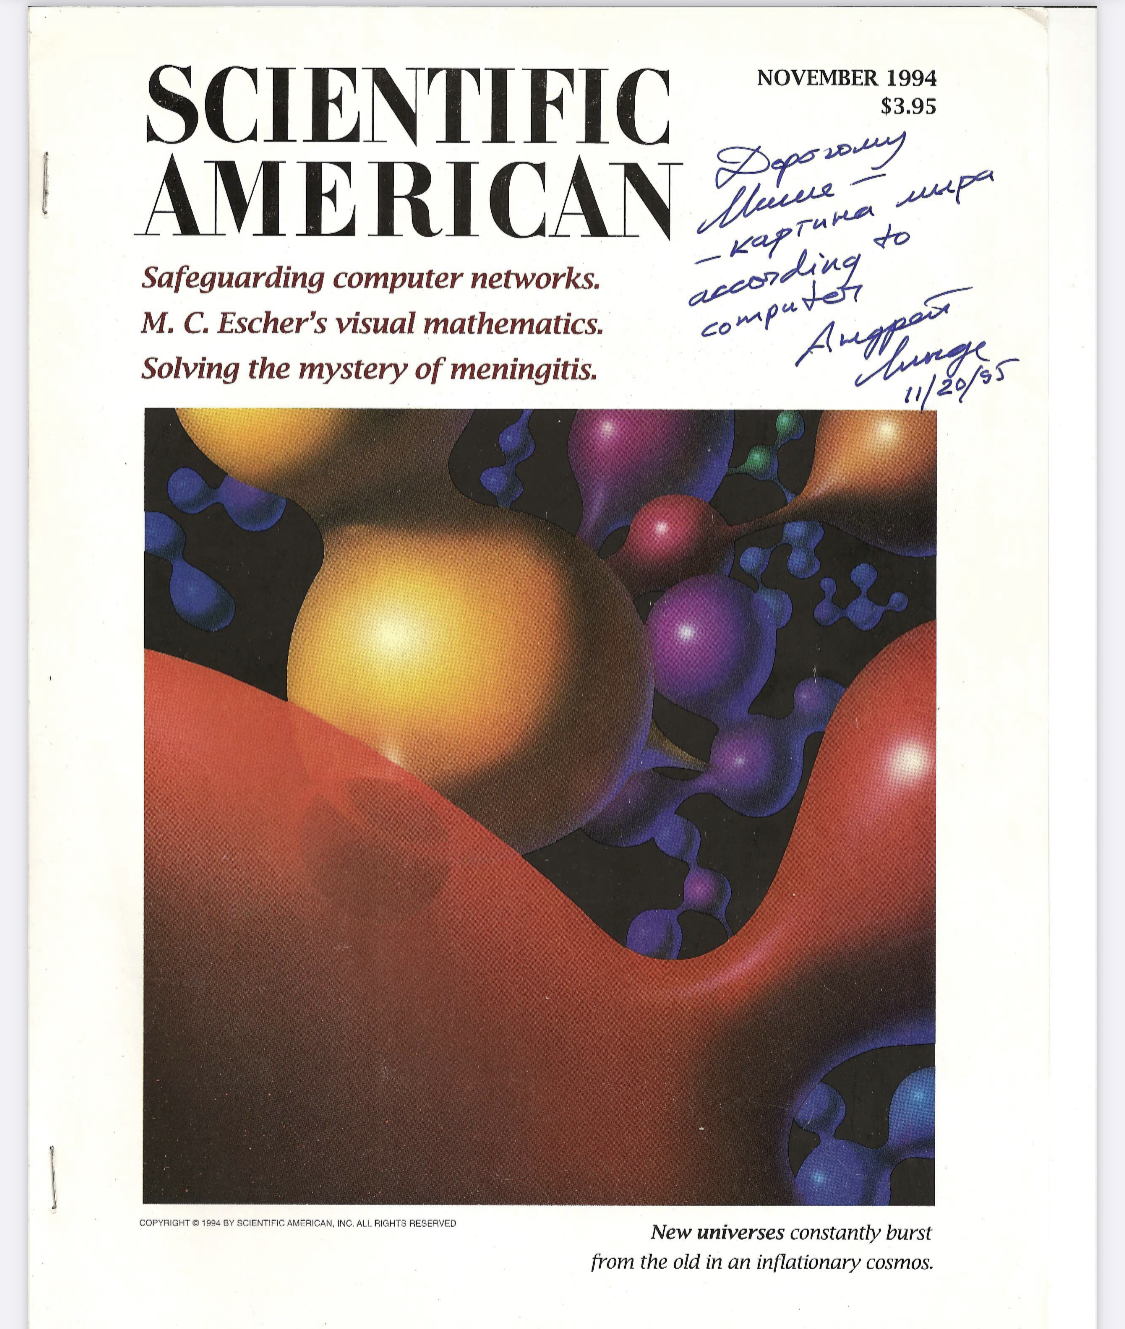 Автограф  А. Линде к его другой статье (во время второй нашей встречи в Сан-Франциско в 1995)